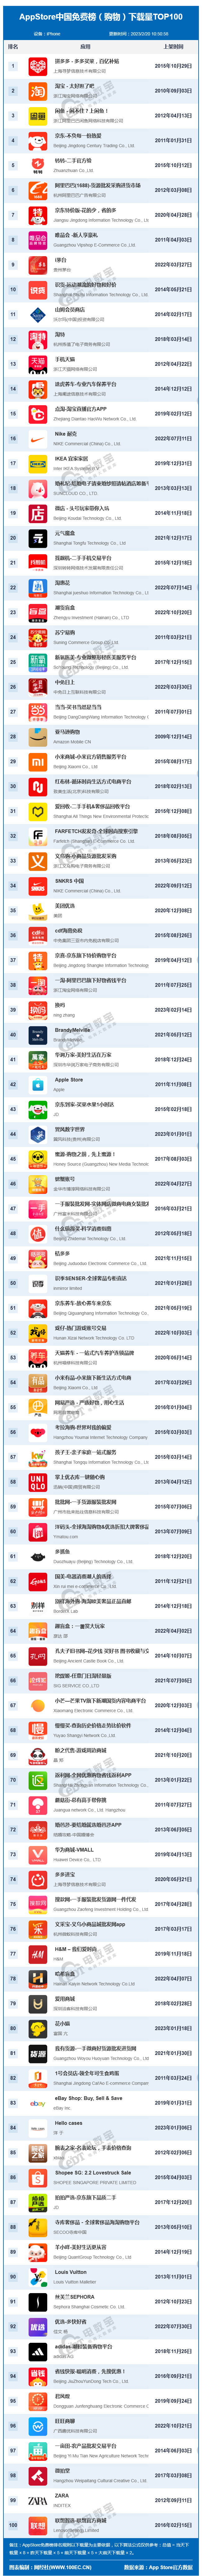 2月AppStore中国免费榜(购物)TOP100 拼多多 淘宝稳保前二